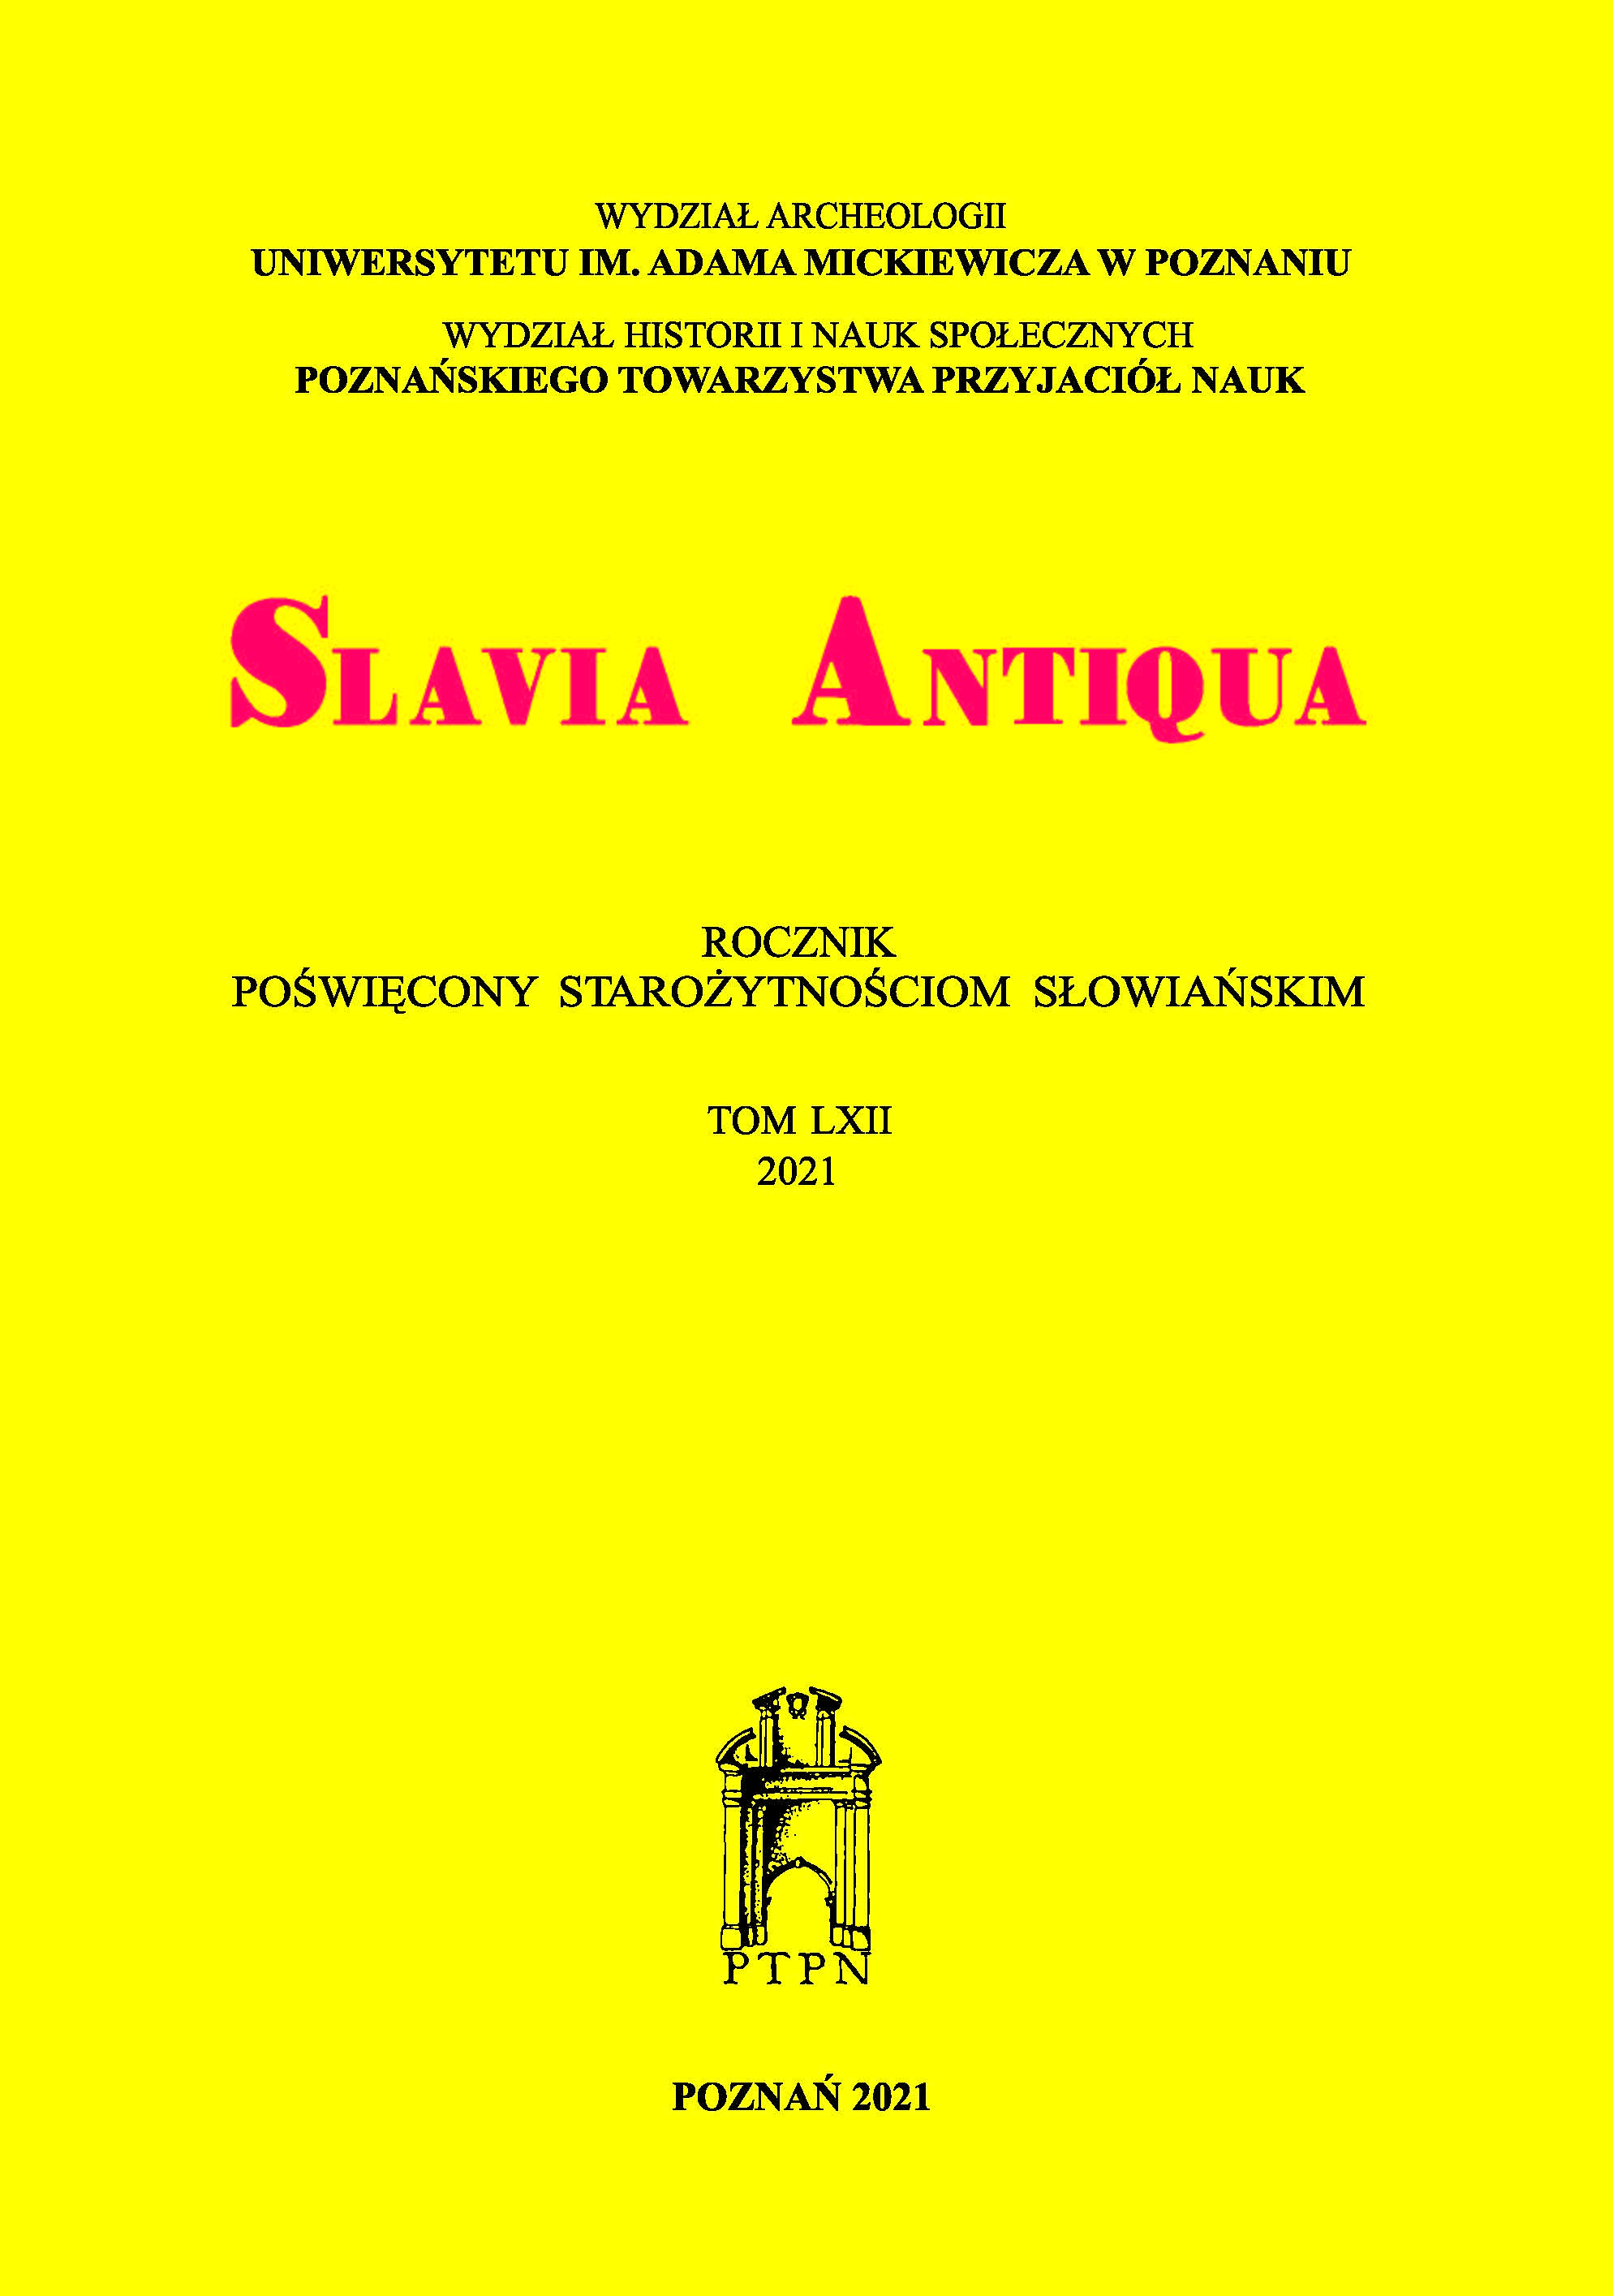 PROFESOR JERZY GĄSSOWSKI (1926-2021) Cover Image